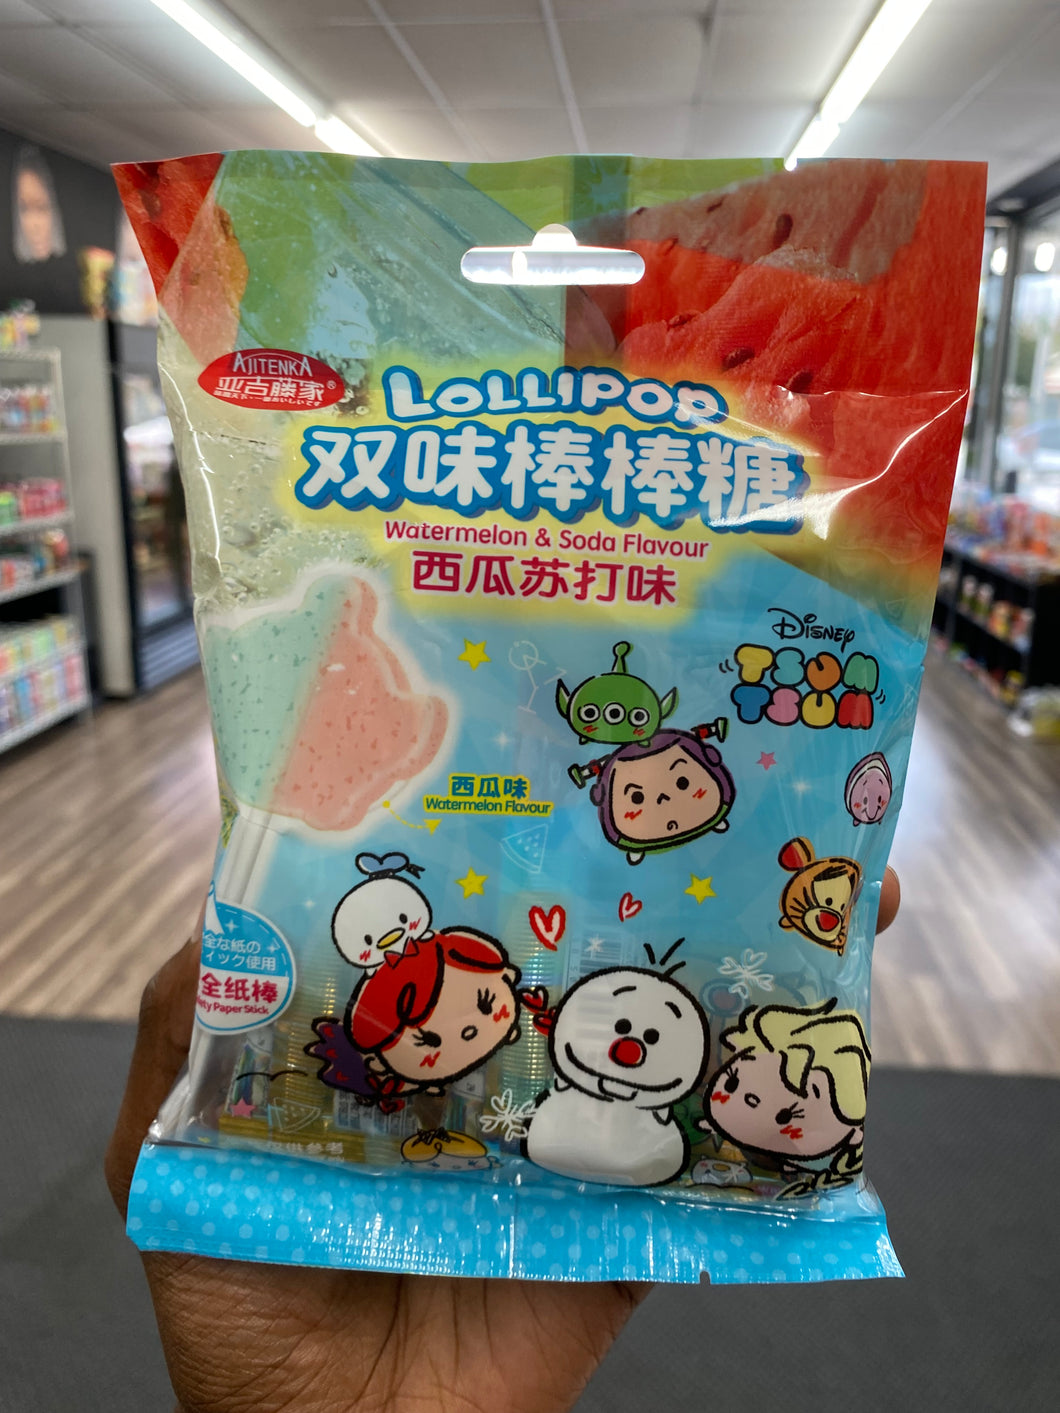 Watermelon & Soda Flavor Lollipop (Japan)